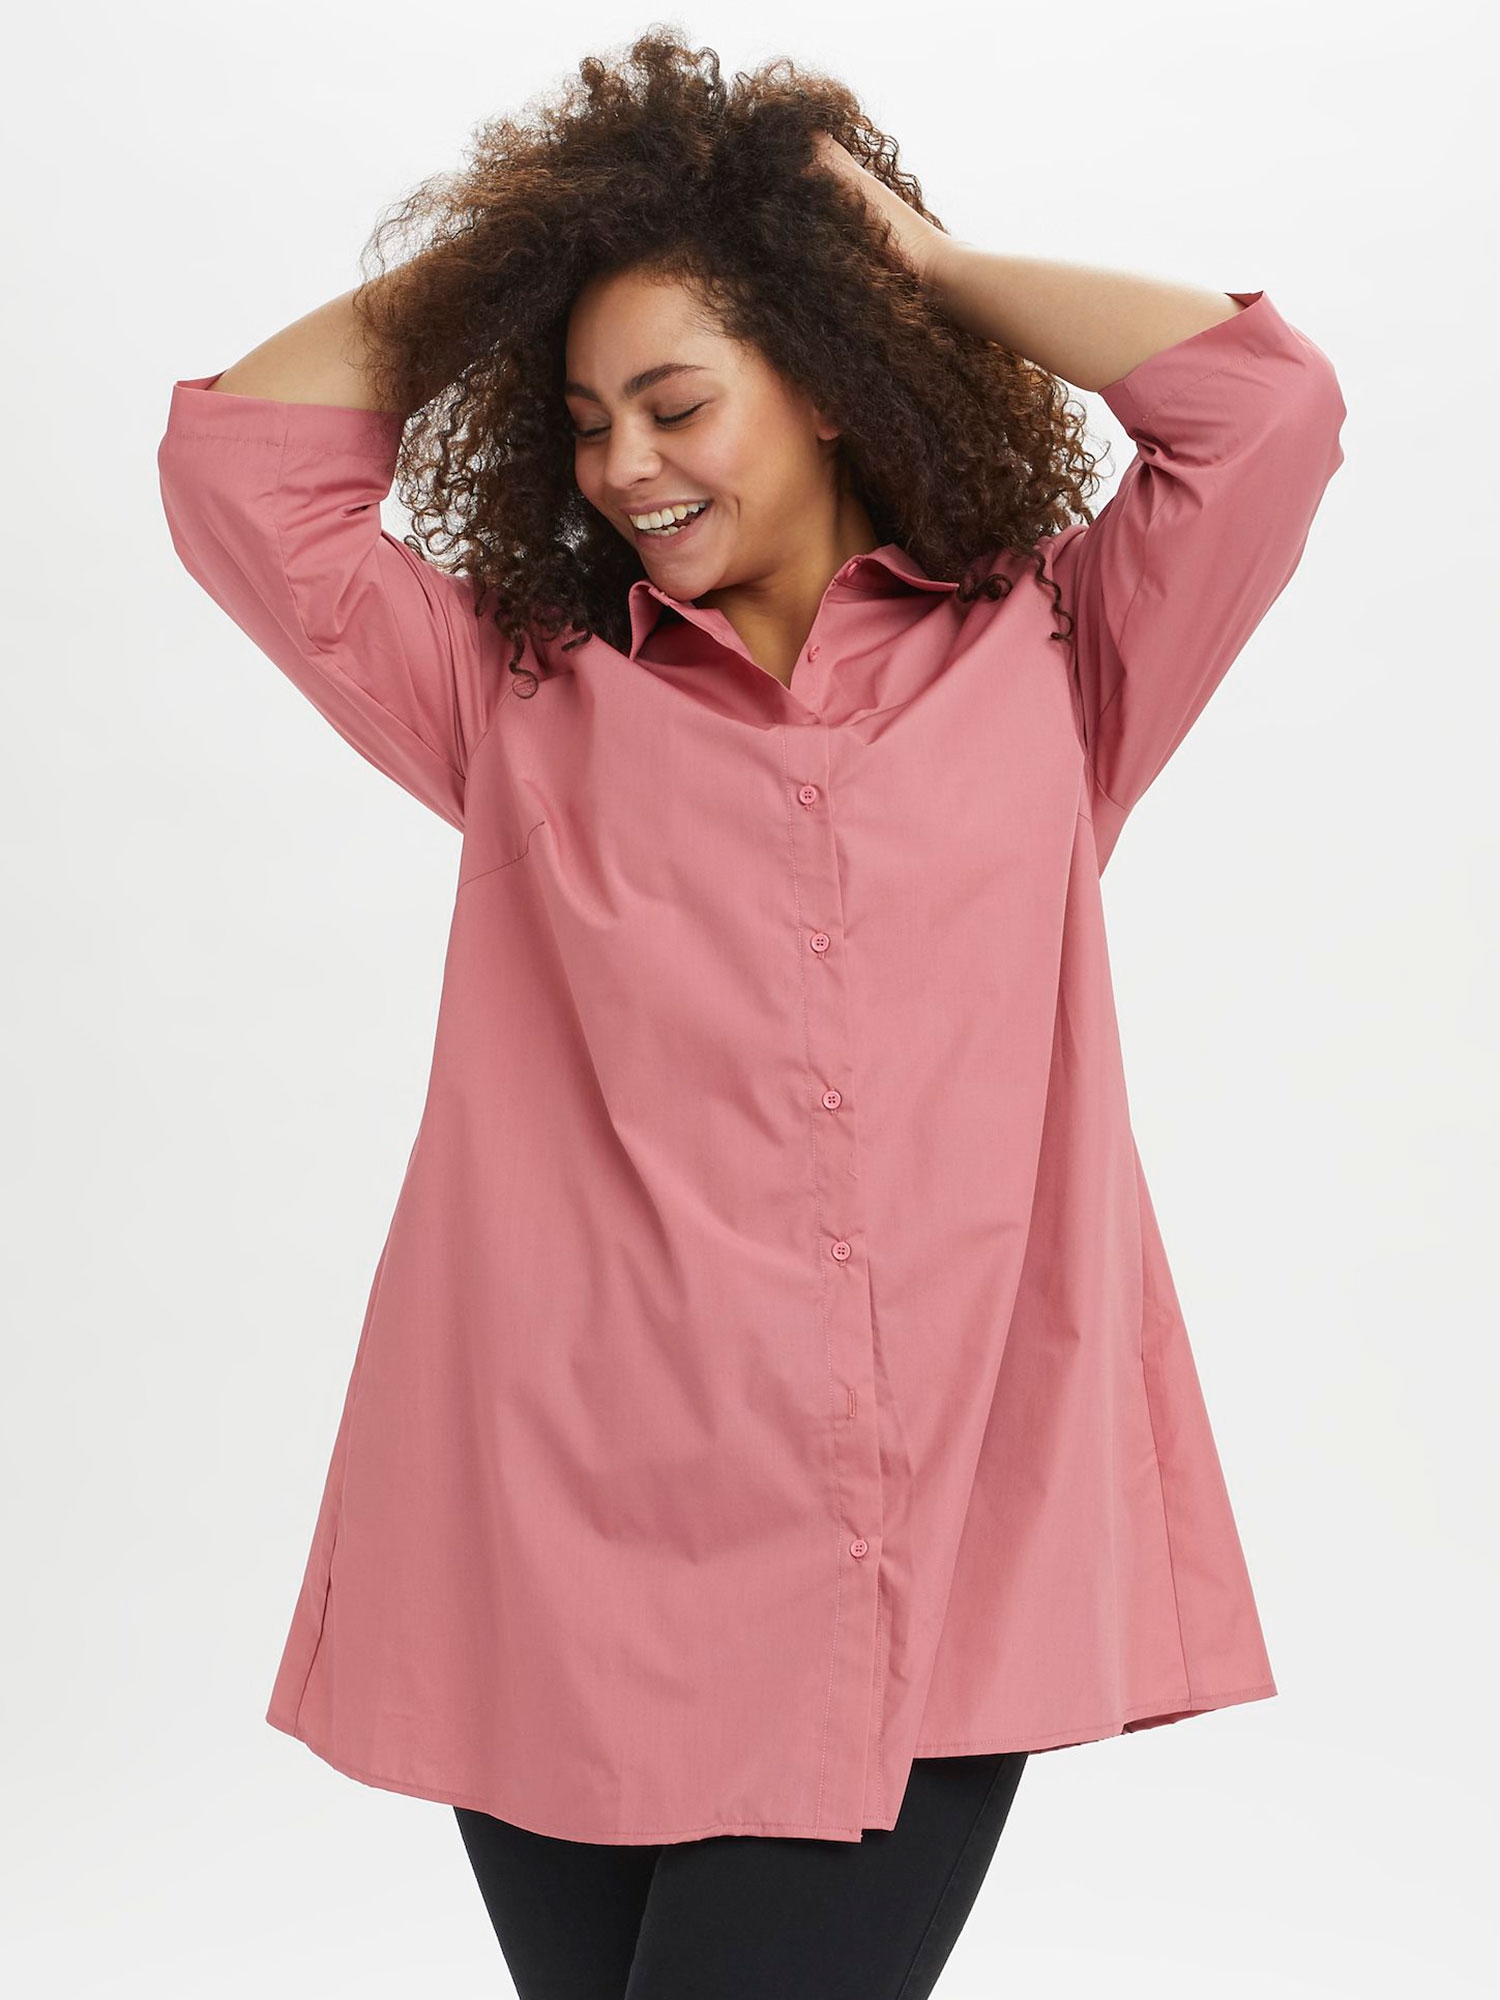 Billede af Pink skjorte tunika med lommer